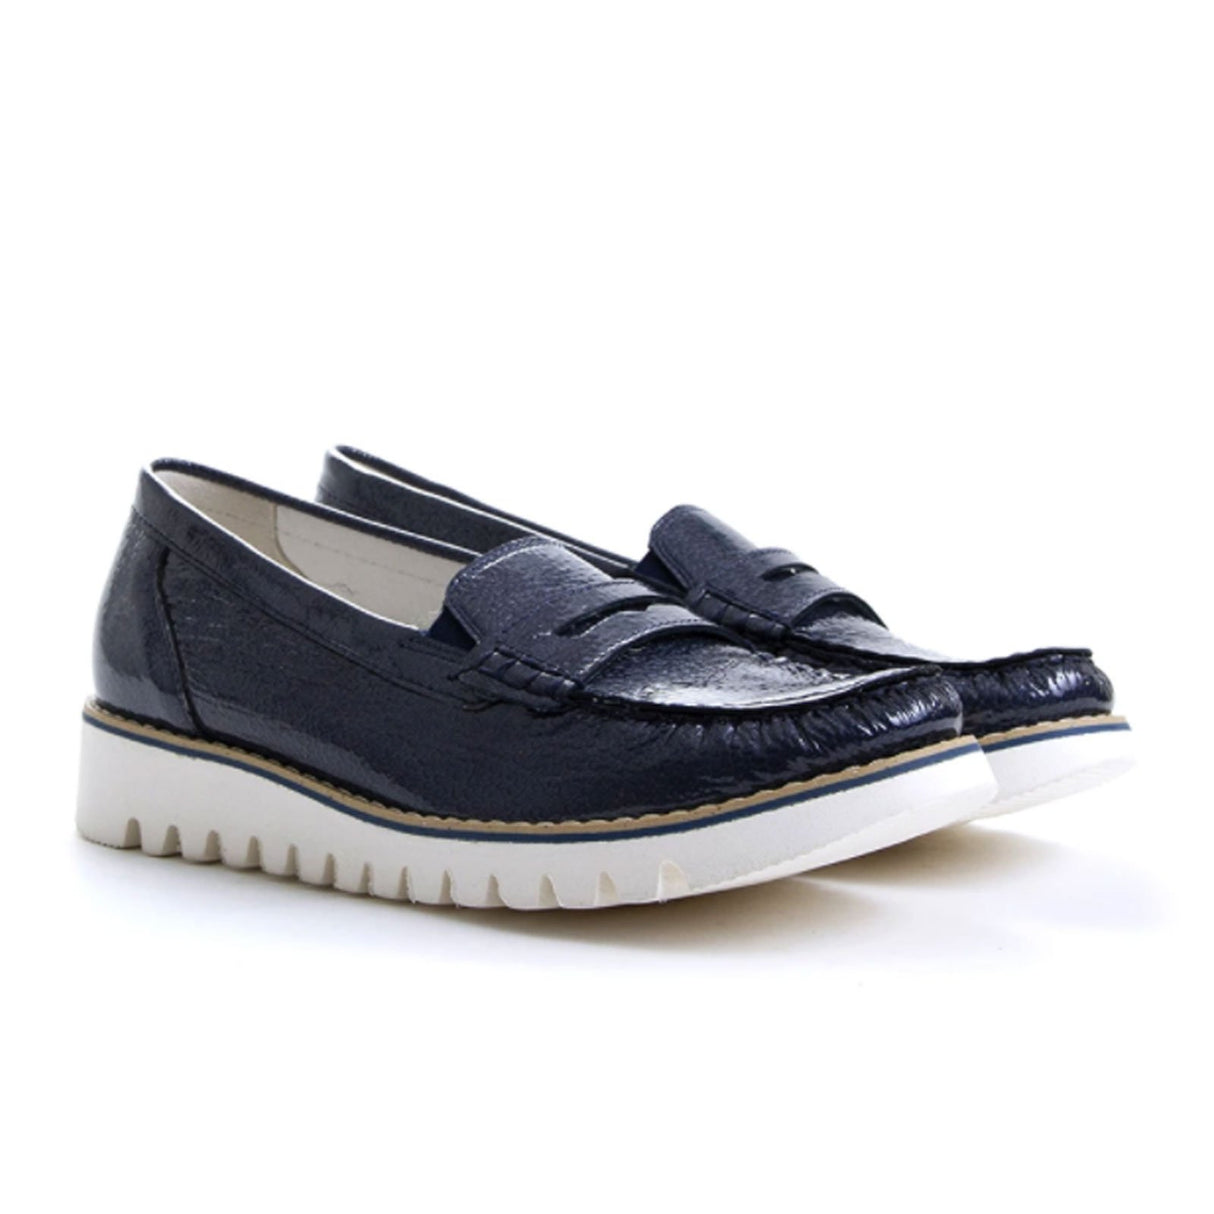 Waldlaufer Lyla 926504 Slip On Loafer (Women) - Patent Navy Dress-Casual - Loafers - The Heel Shoe Fitters